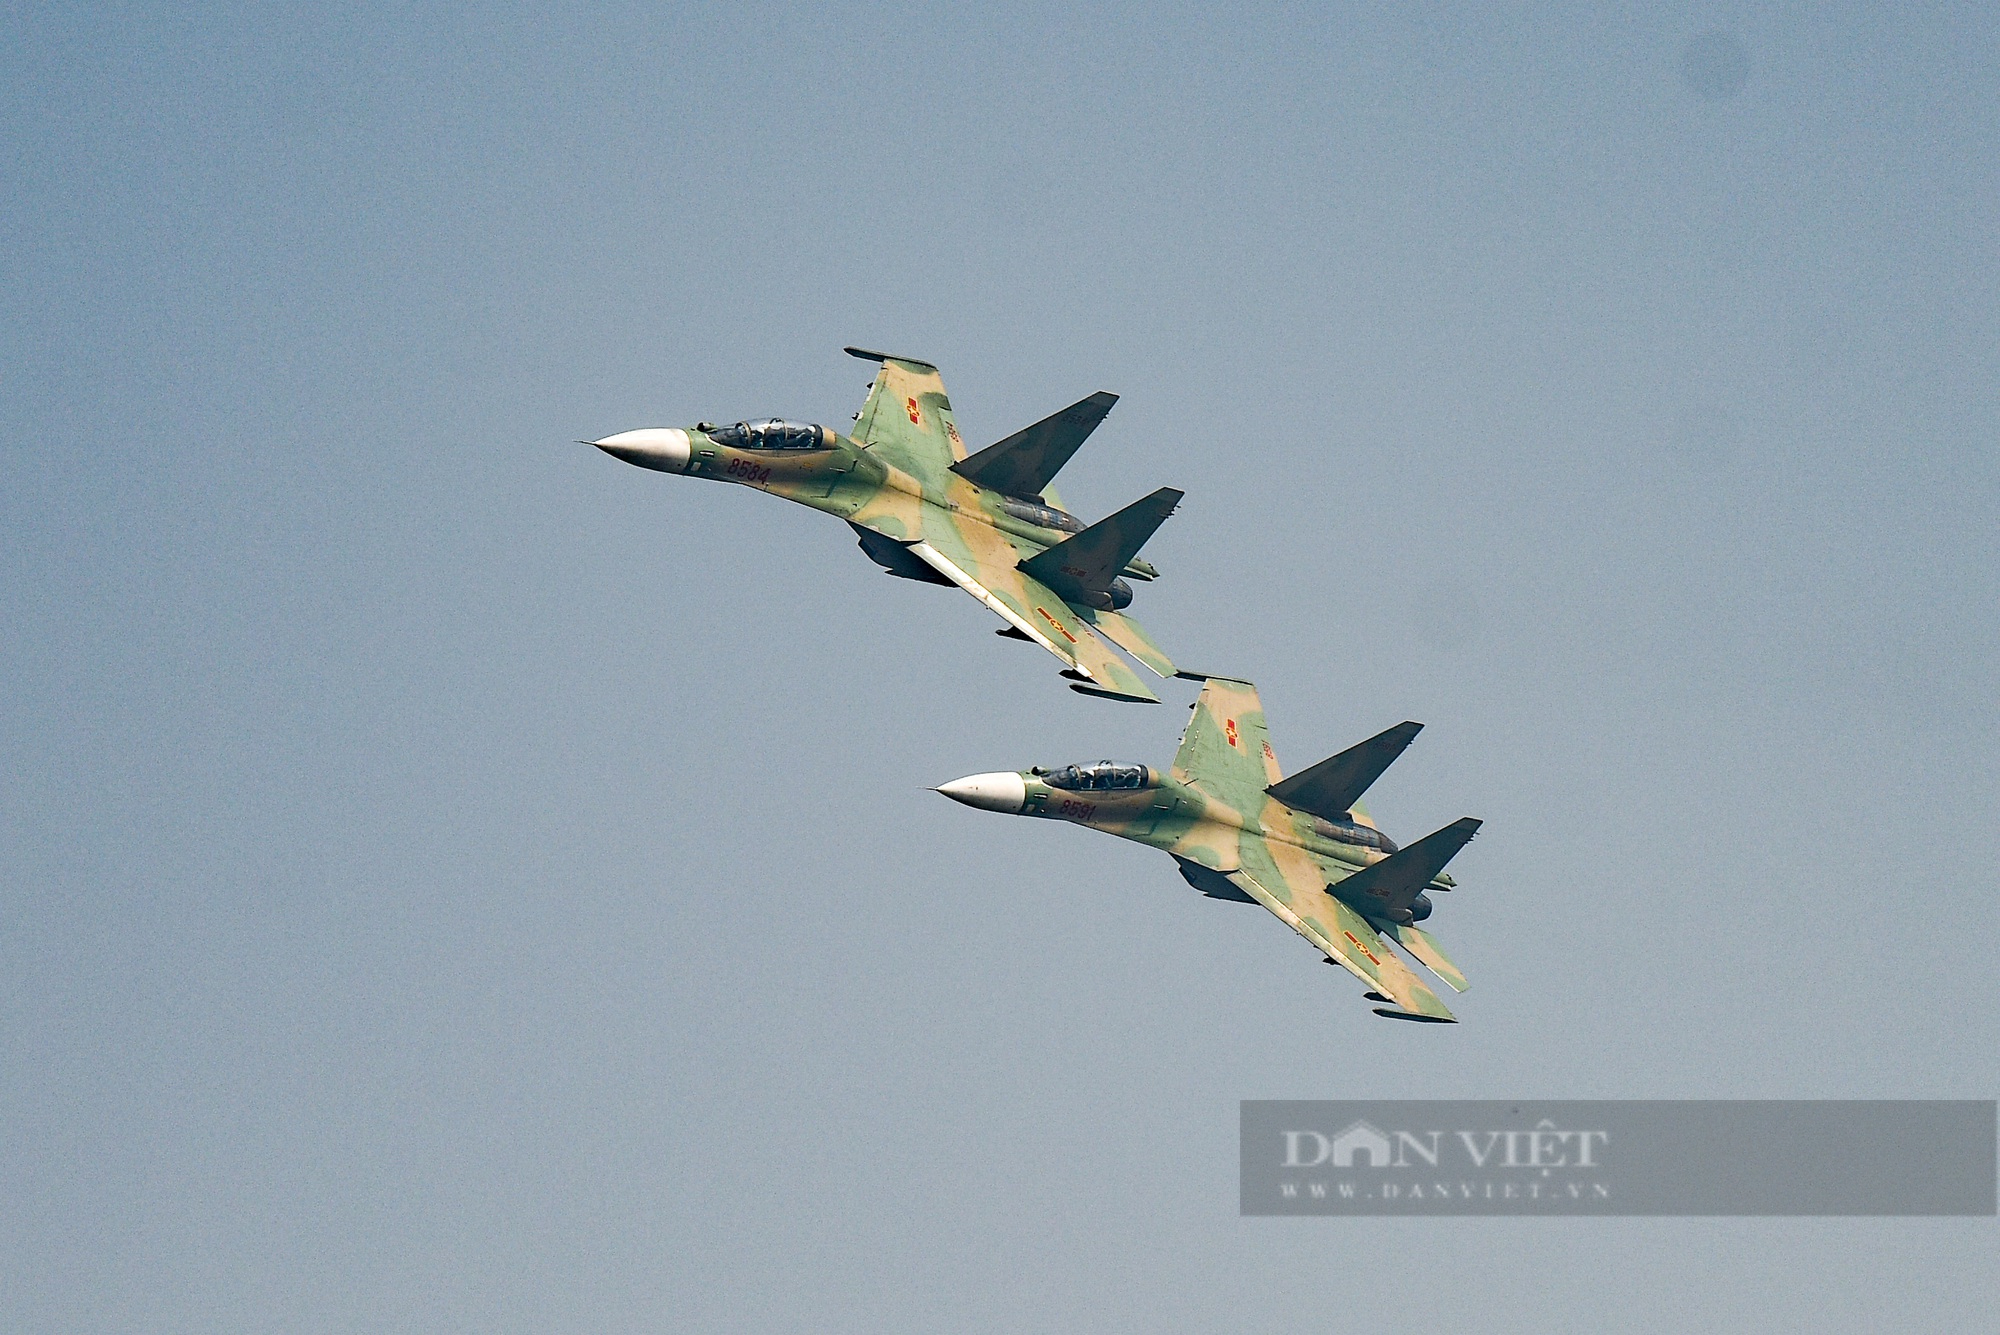 Su-30MK2: Thưởng thức hình ảnh tuyệt vời về Siêu máy bay chiến đấu Su-30MK2, với thiết kế hiện đại và sức mạnh phi thường. Hãy cùng chiêm ngưỡng chuyến bay đầy ấn tượng của chiếc máy bay này trên không trung.